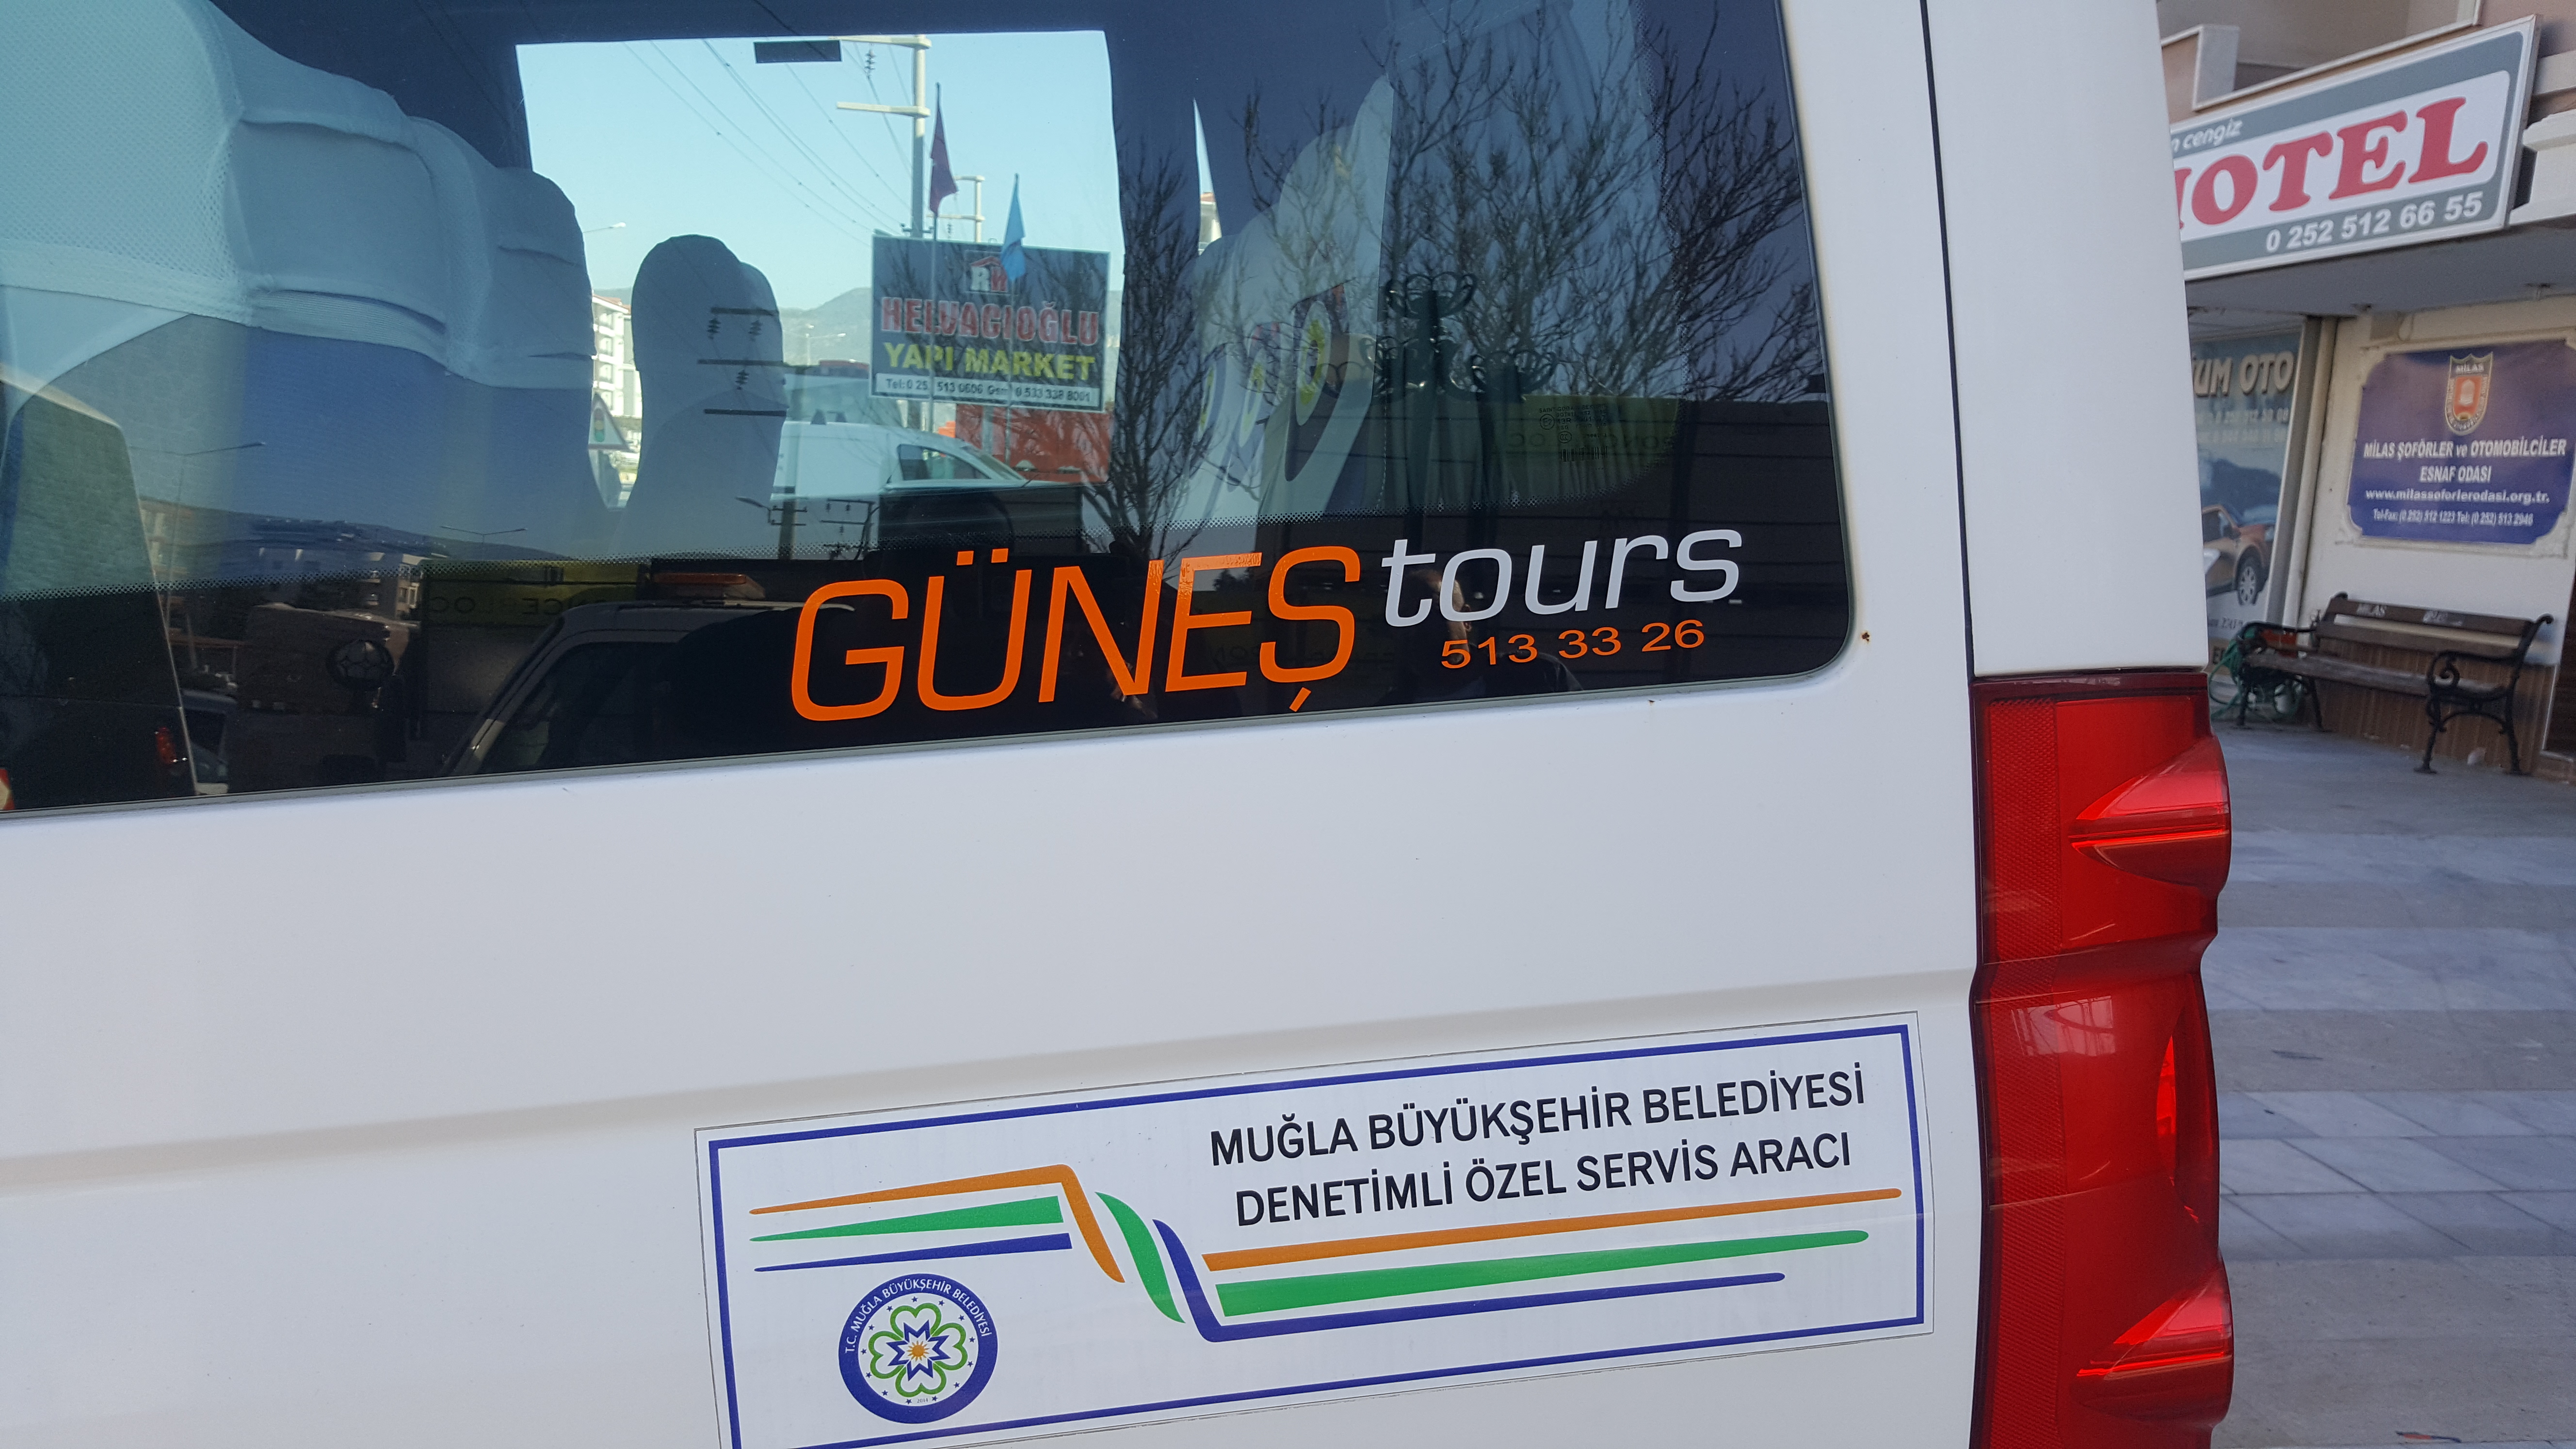 Güneş Tours  - Sercan Güneş inşaat taşımacılık turizm ticaret ltd. şti. - Milas Muğla Telefon 0252 513 33 26 - 0543 655 80 93